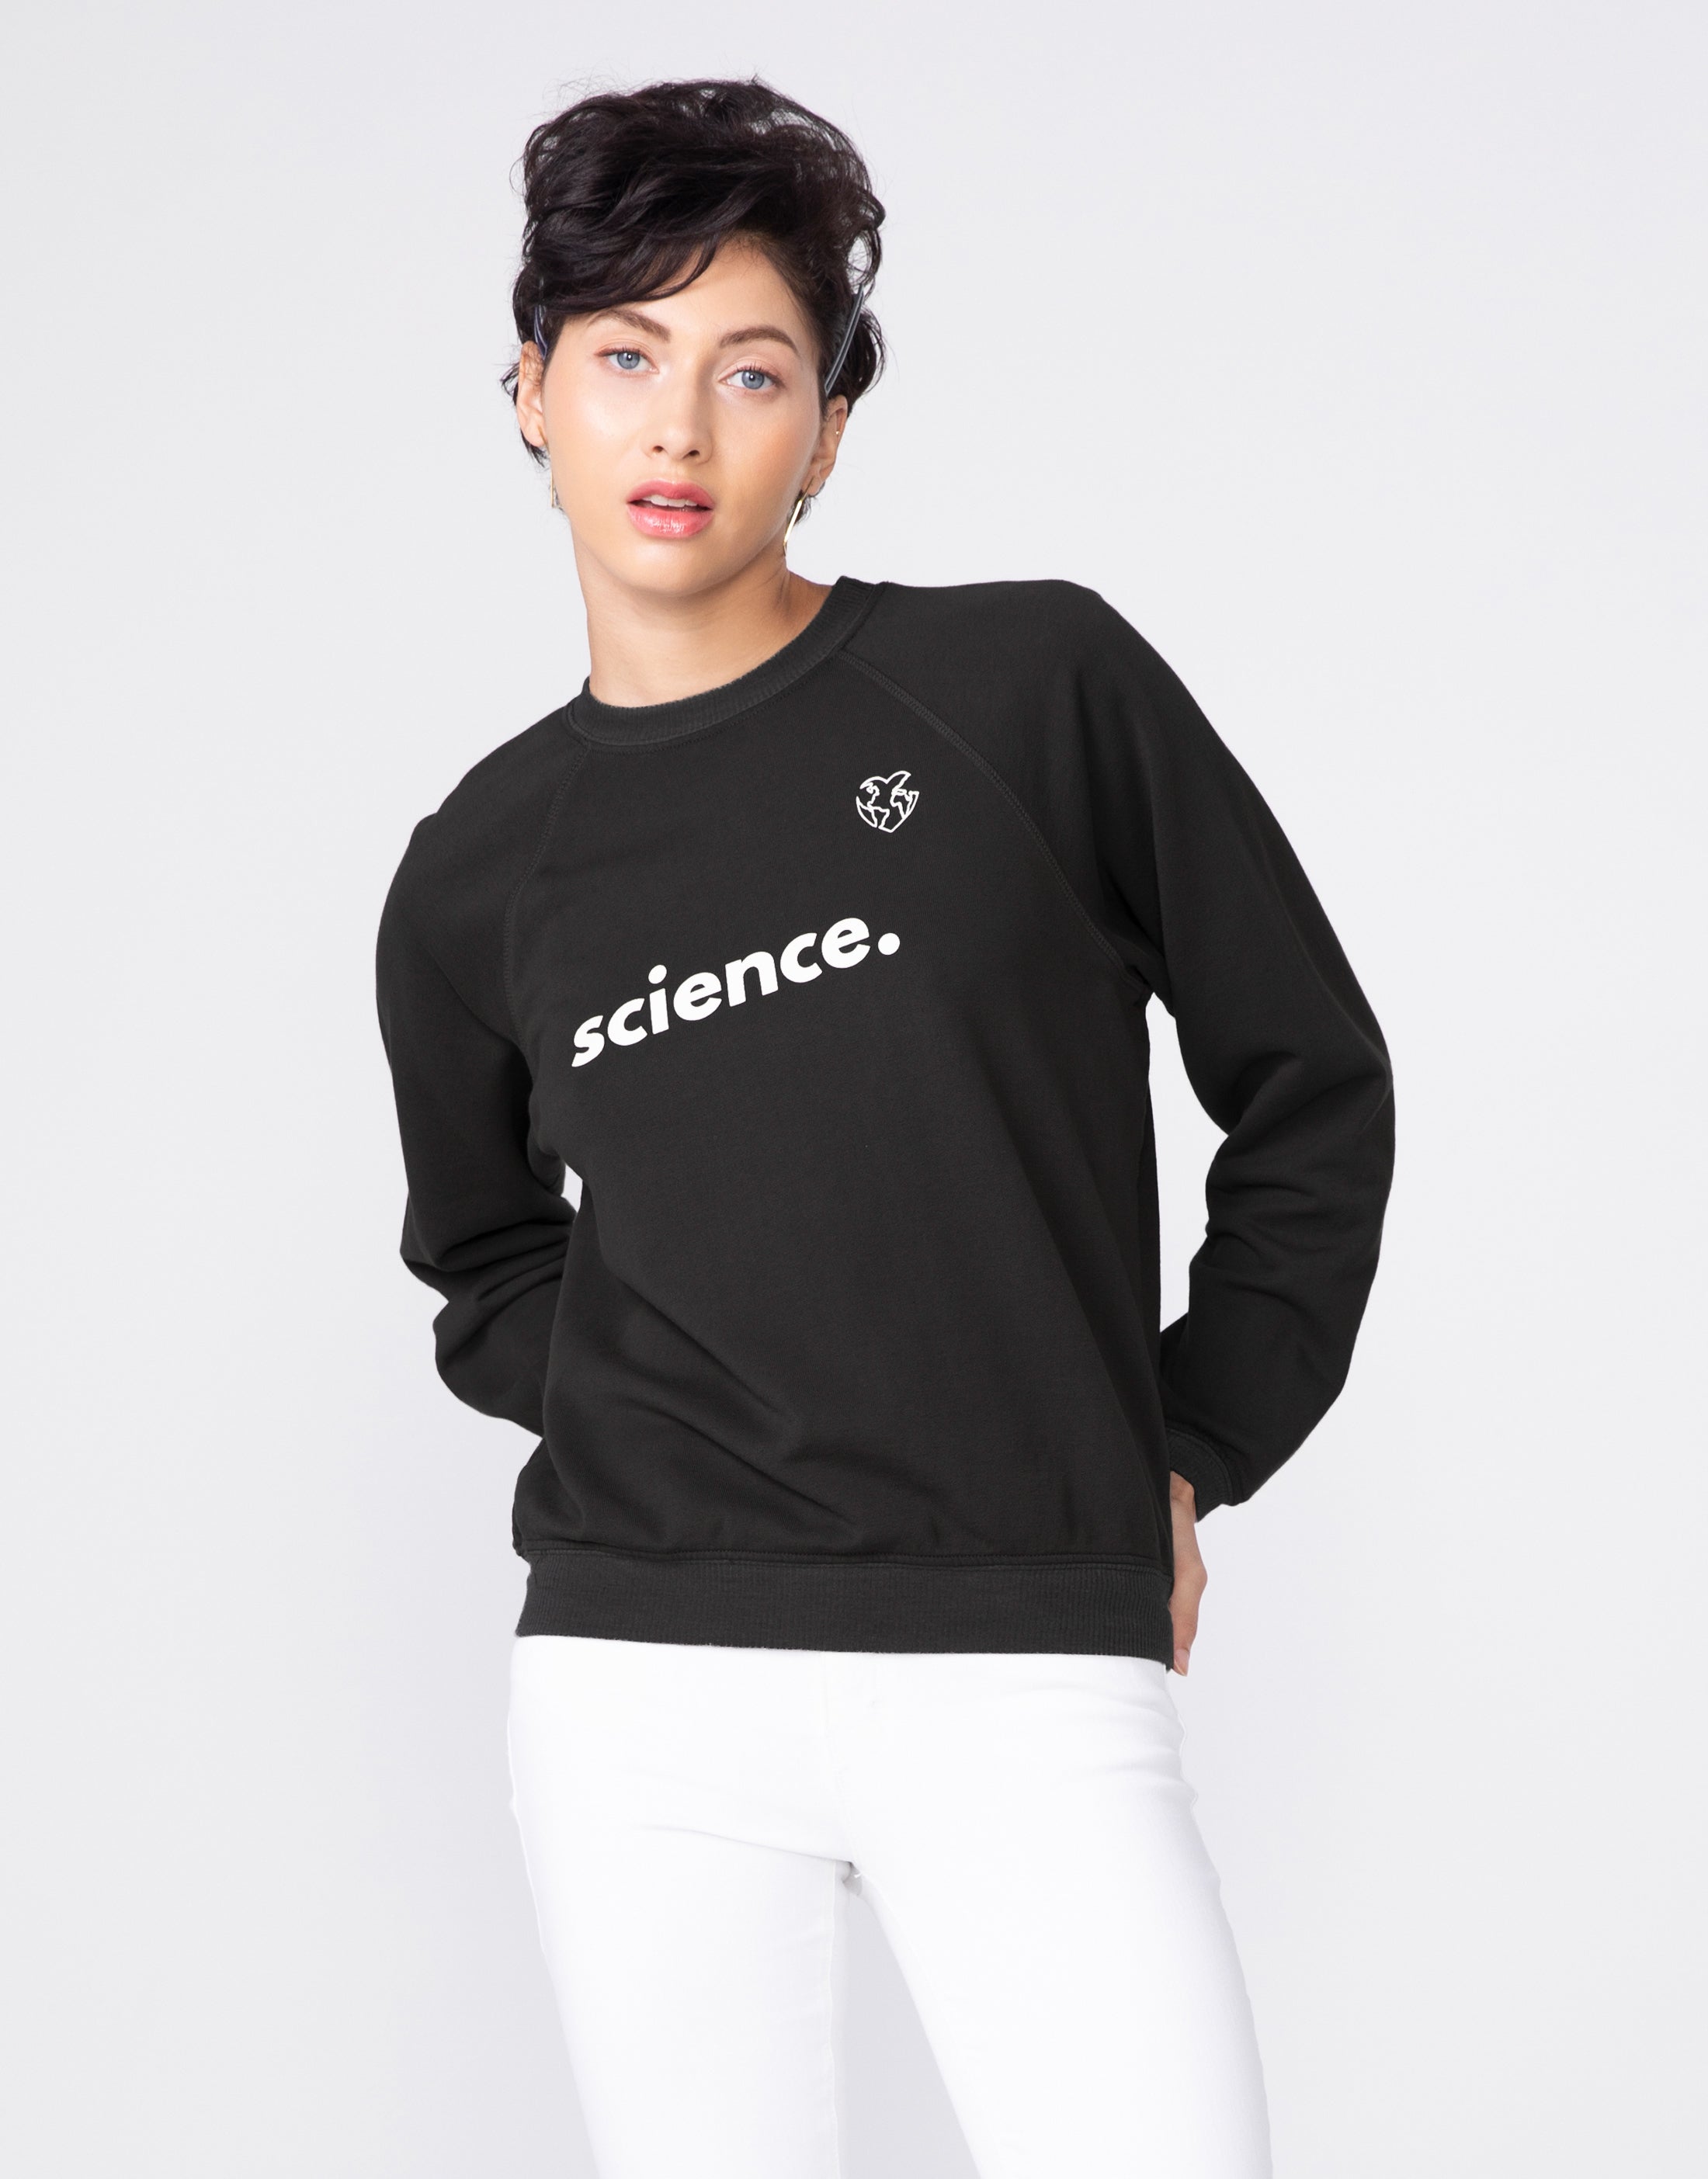 CORNELL Easy Sweatshirt in SCIENCE